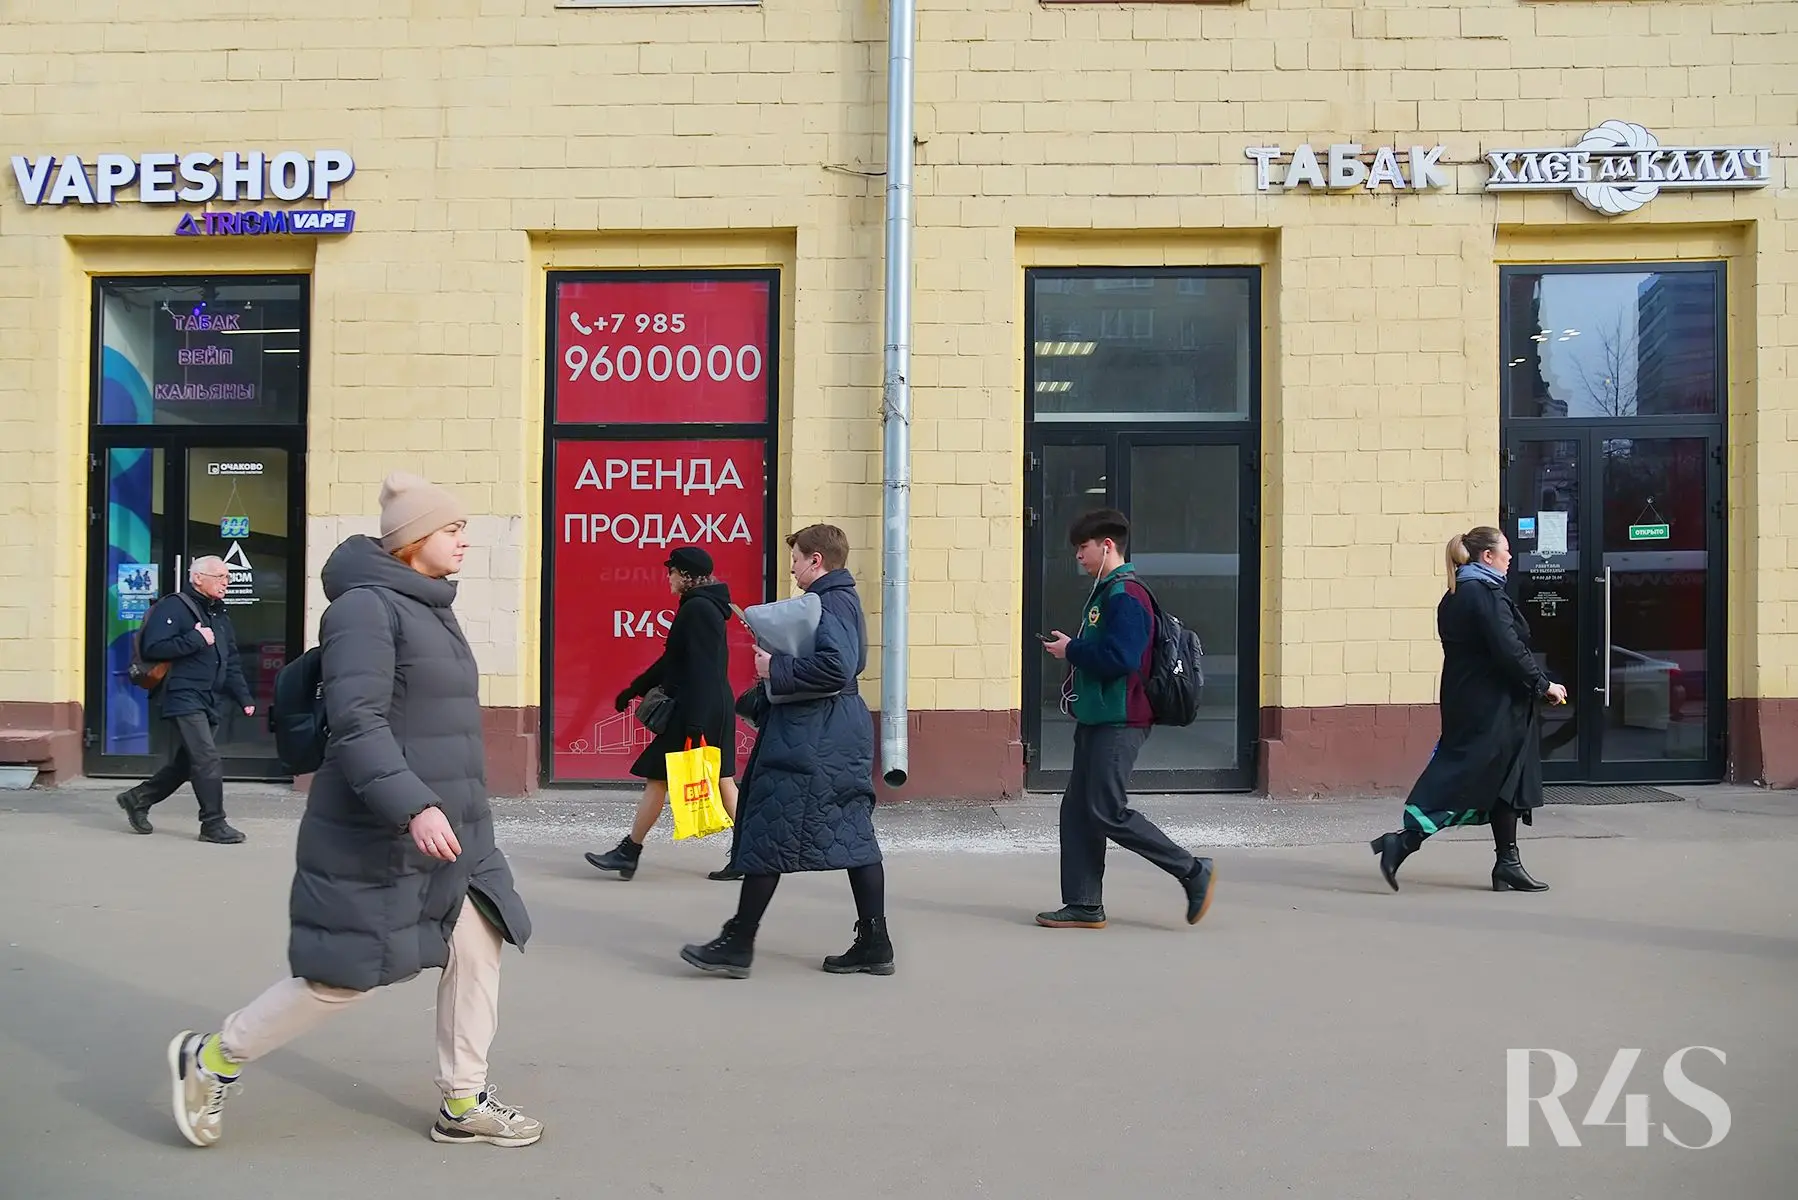 Продажа торговых помещений площадью 180 - 205.2 м2 в Москве:  Щербаковская, 35 R4S | Realty4Sale